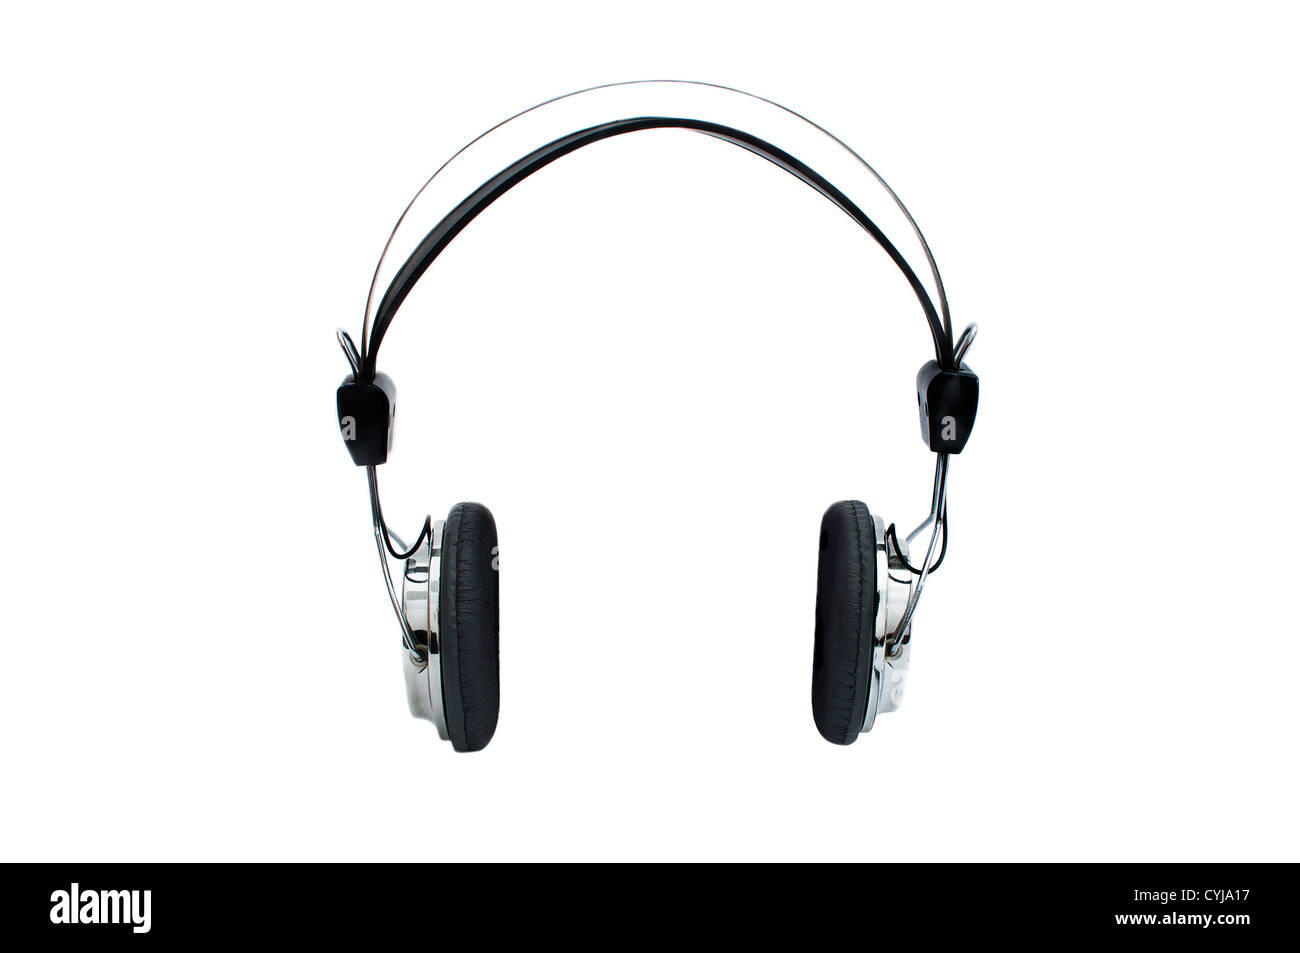 https://c8.alamy.com/comp/CYJA17/retro-headphones-isolated-on-white-background-CYJA17.jpg